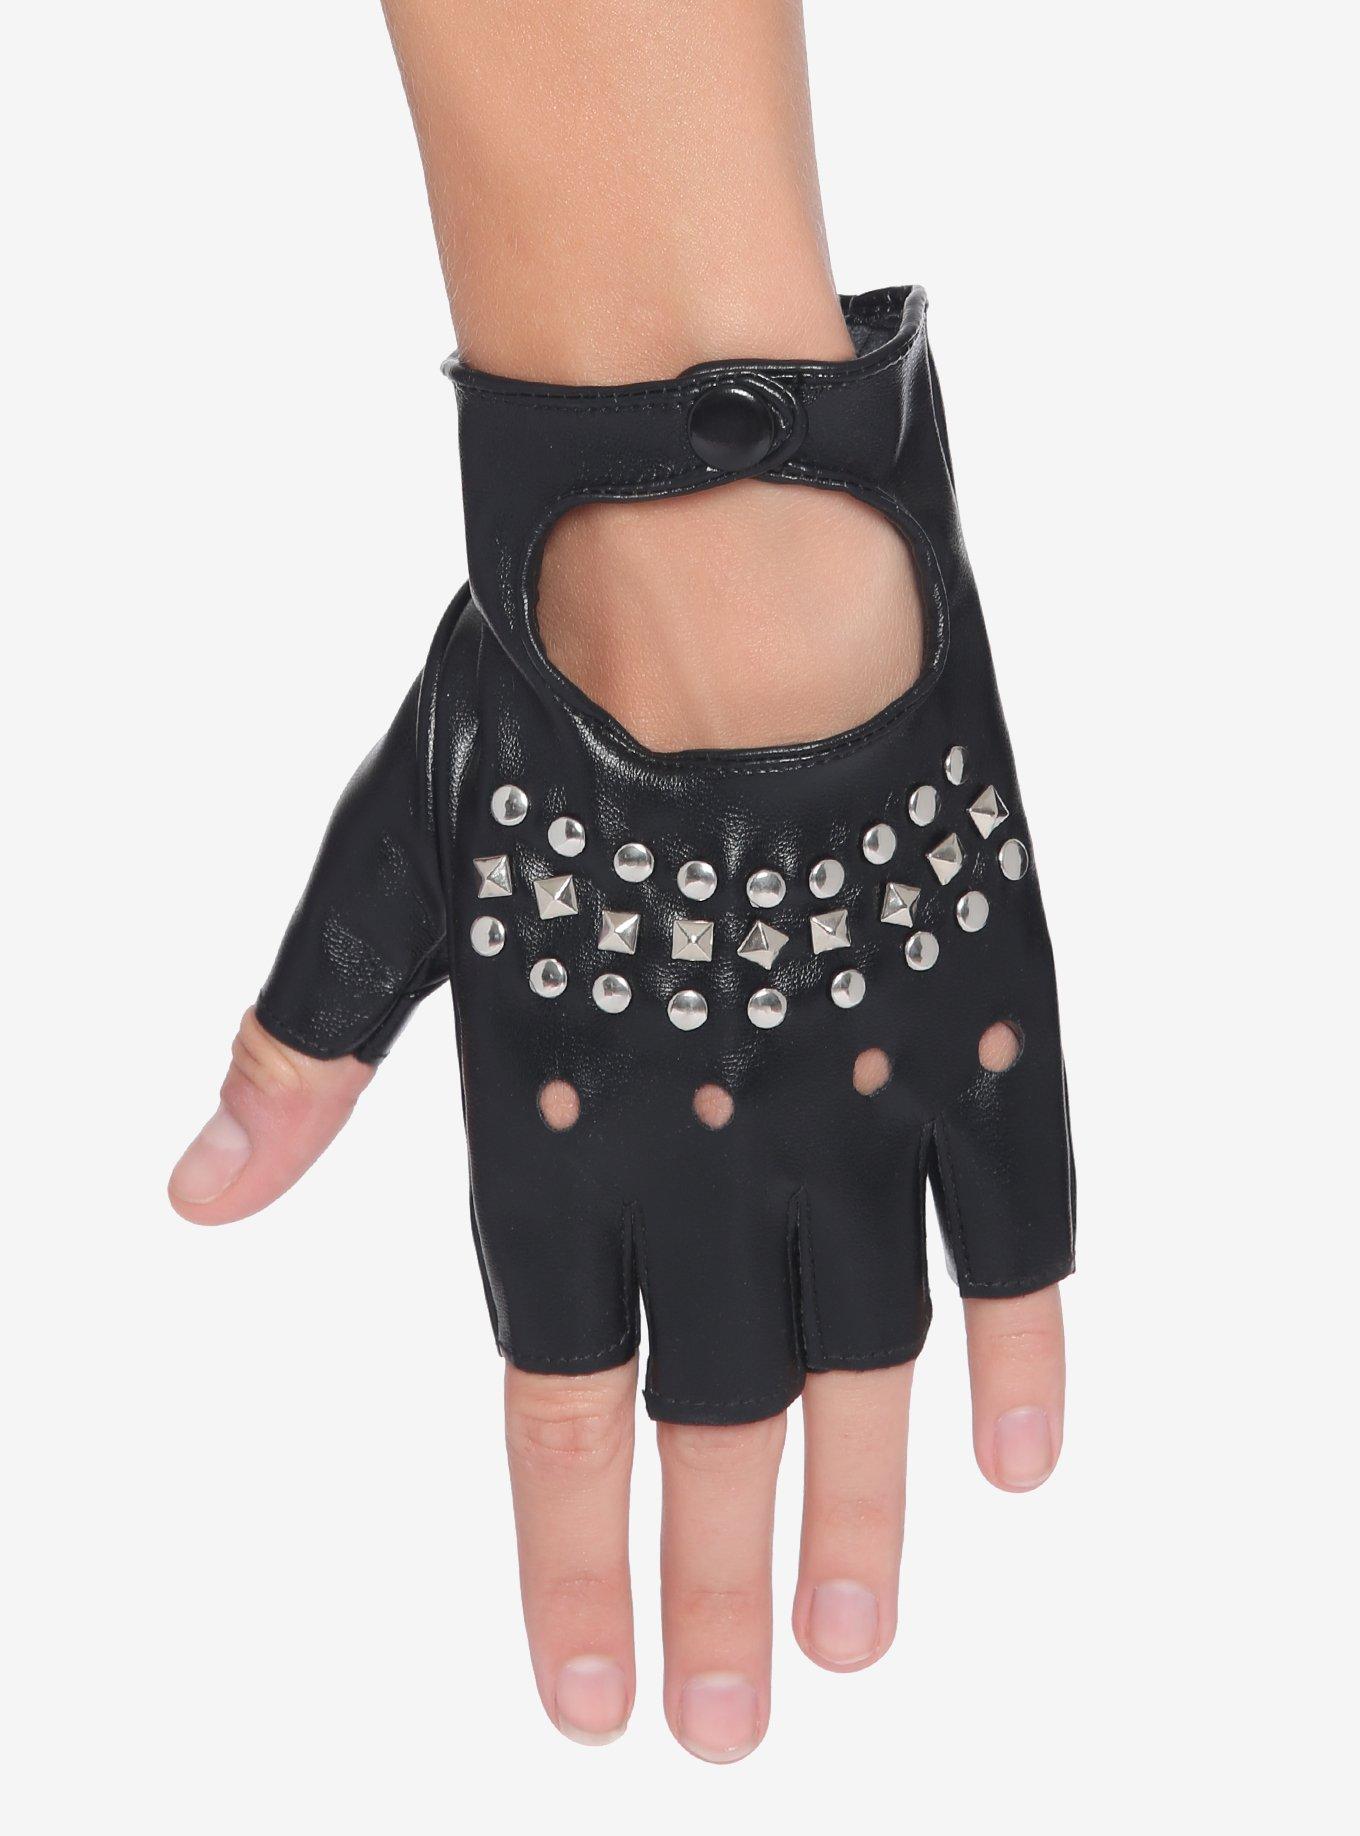 Studded Black Fingerless Gloves, , alternate